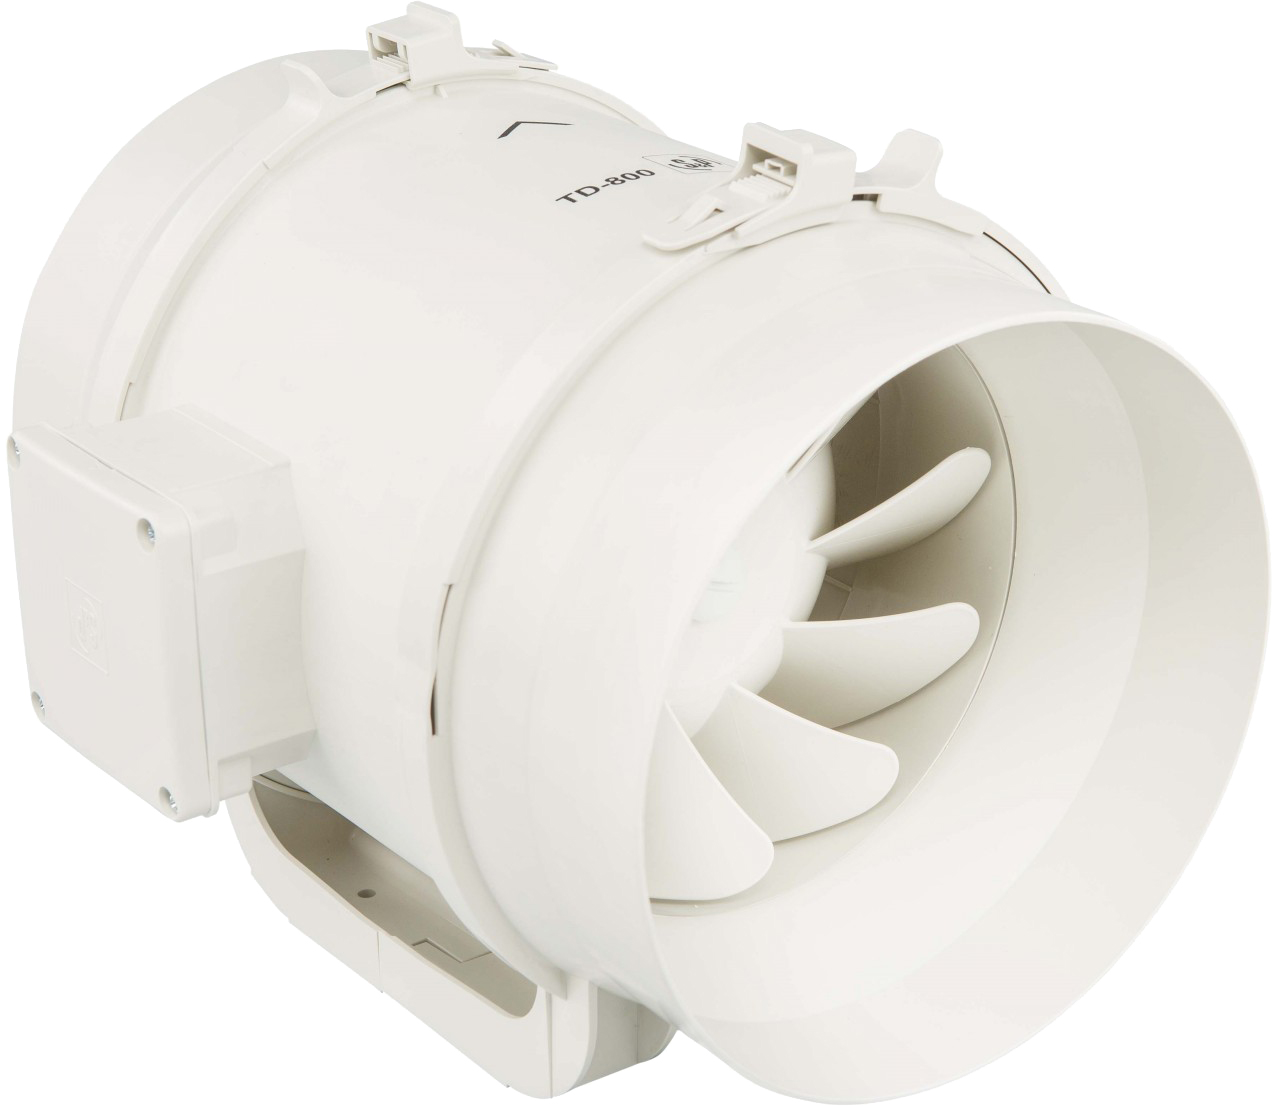 Вытяжной канальный вентилятор 150 мм Soler&Palau TD-500/150 3V N8